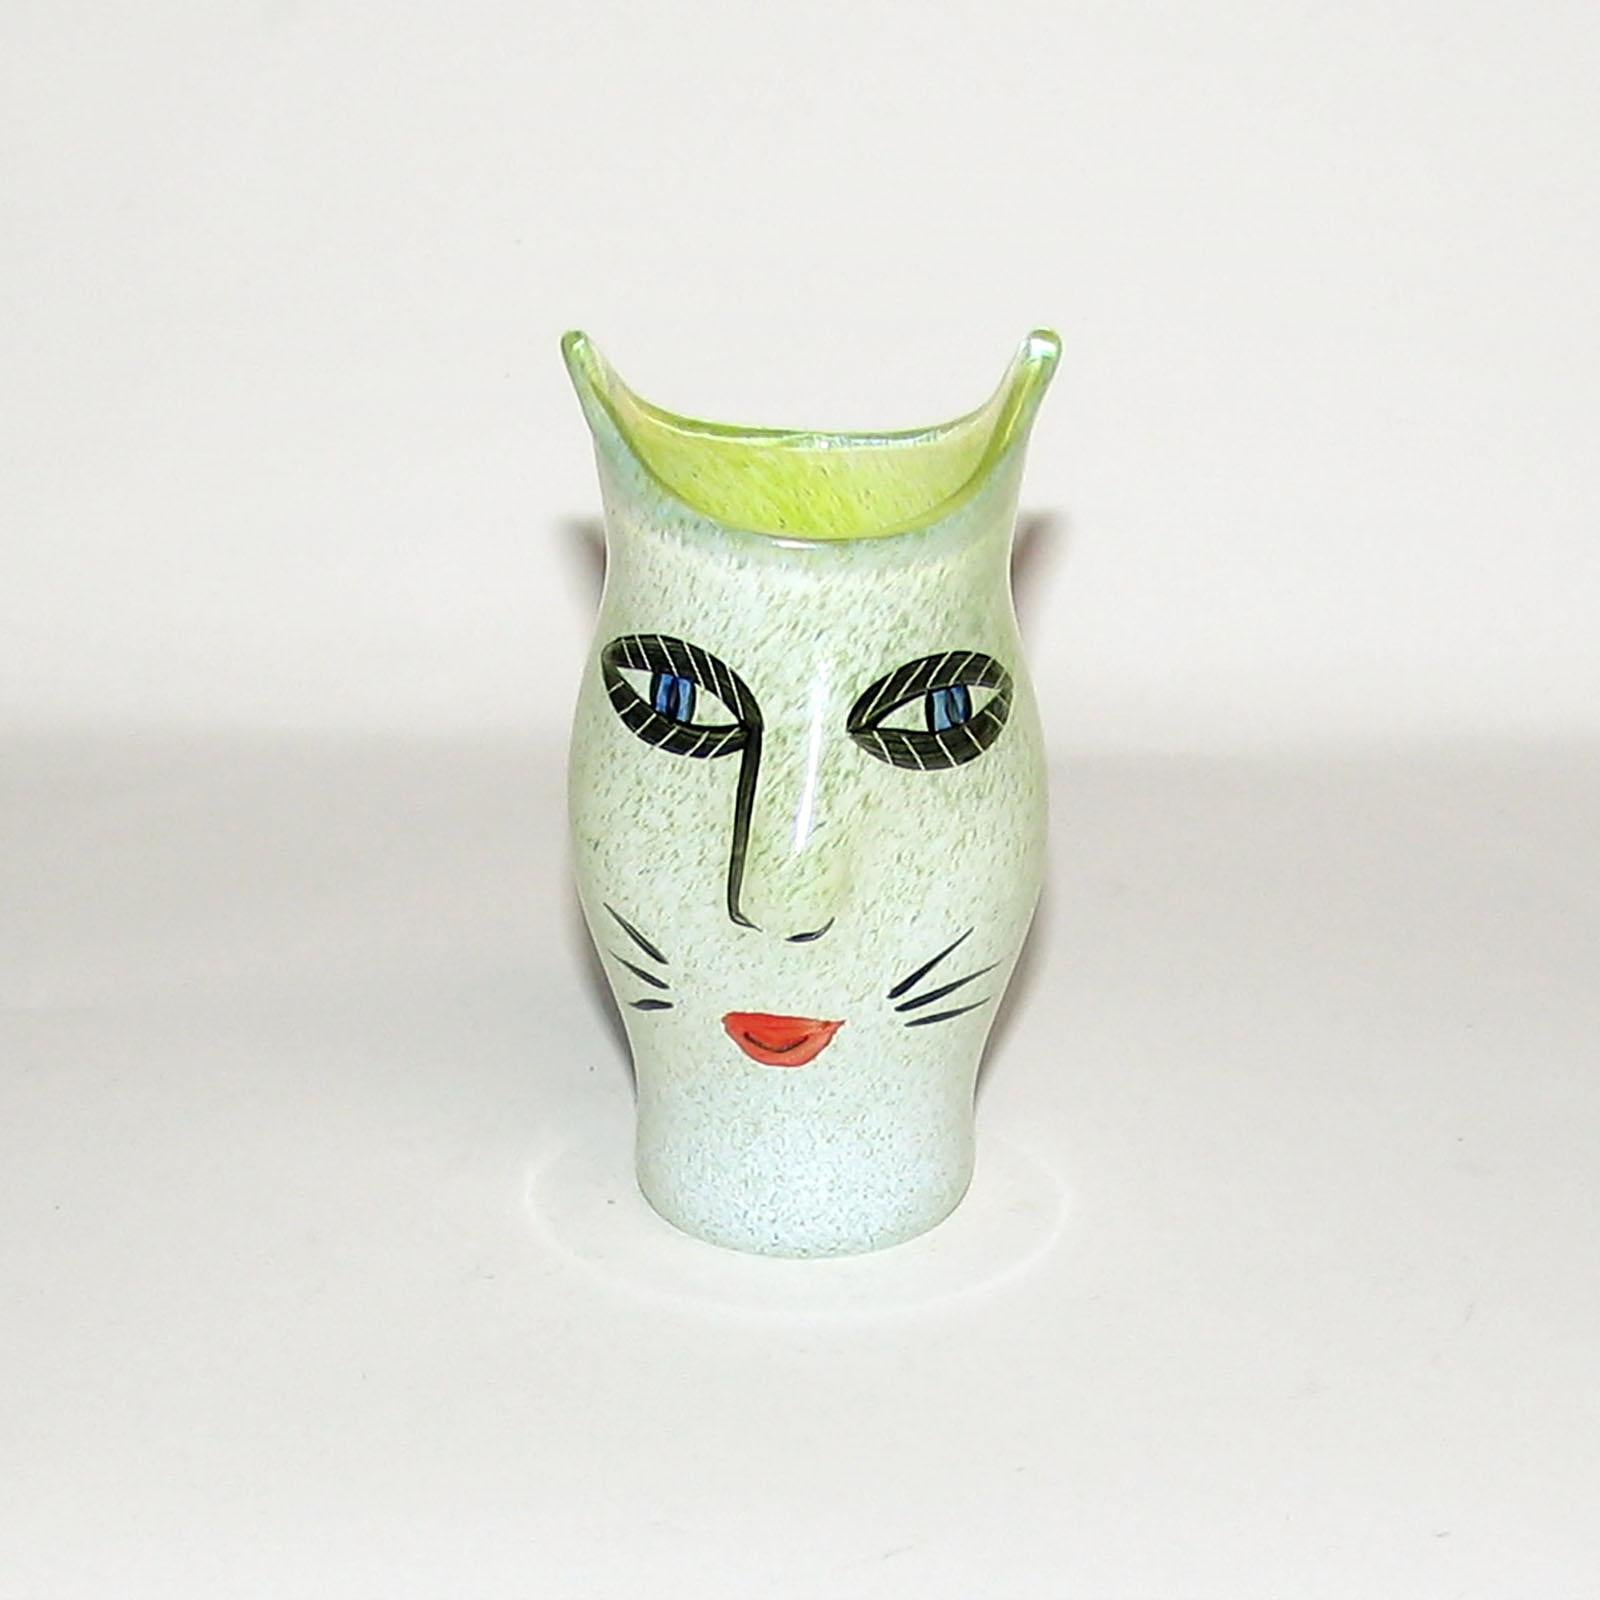 Ulrica Hydman Vallien pour Kosta Boda, Suède. Vase en verre d'art soufflé à la bouche décoré d'un visage de femme. Design suédois, années 1980.
Mesures : 9.5 x 5 cm.
En parfait état.
Signé.